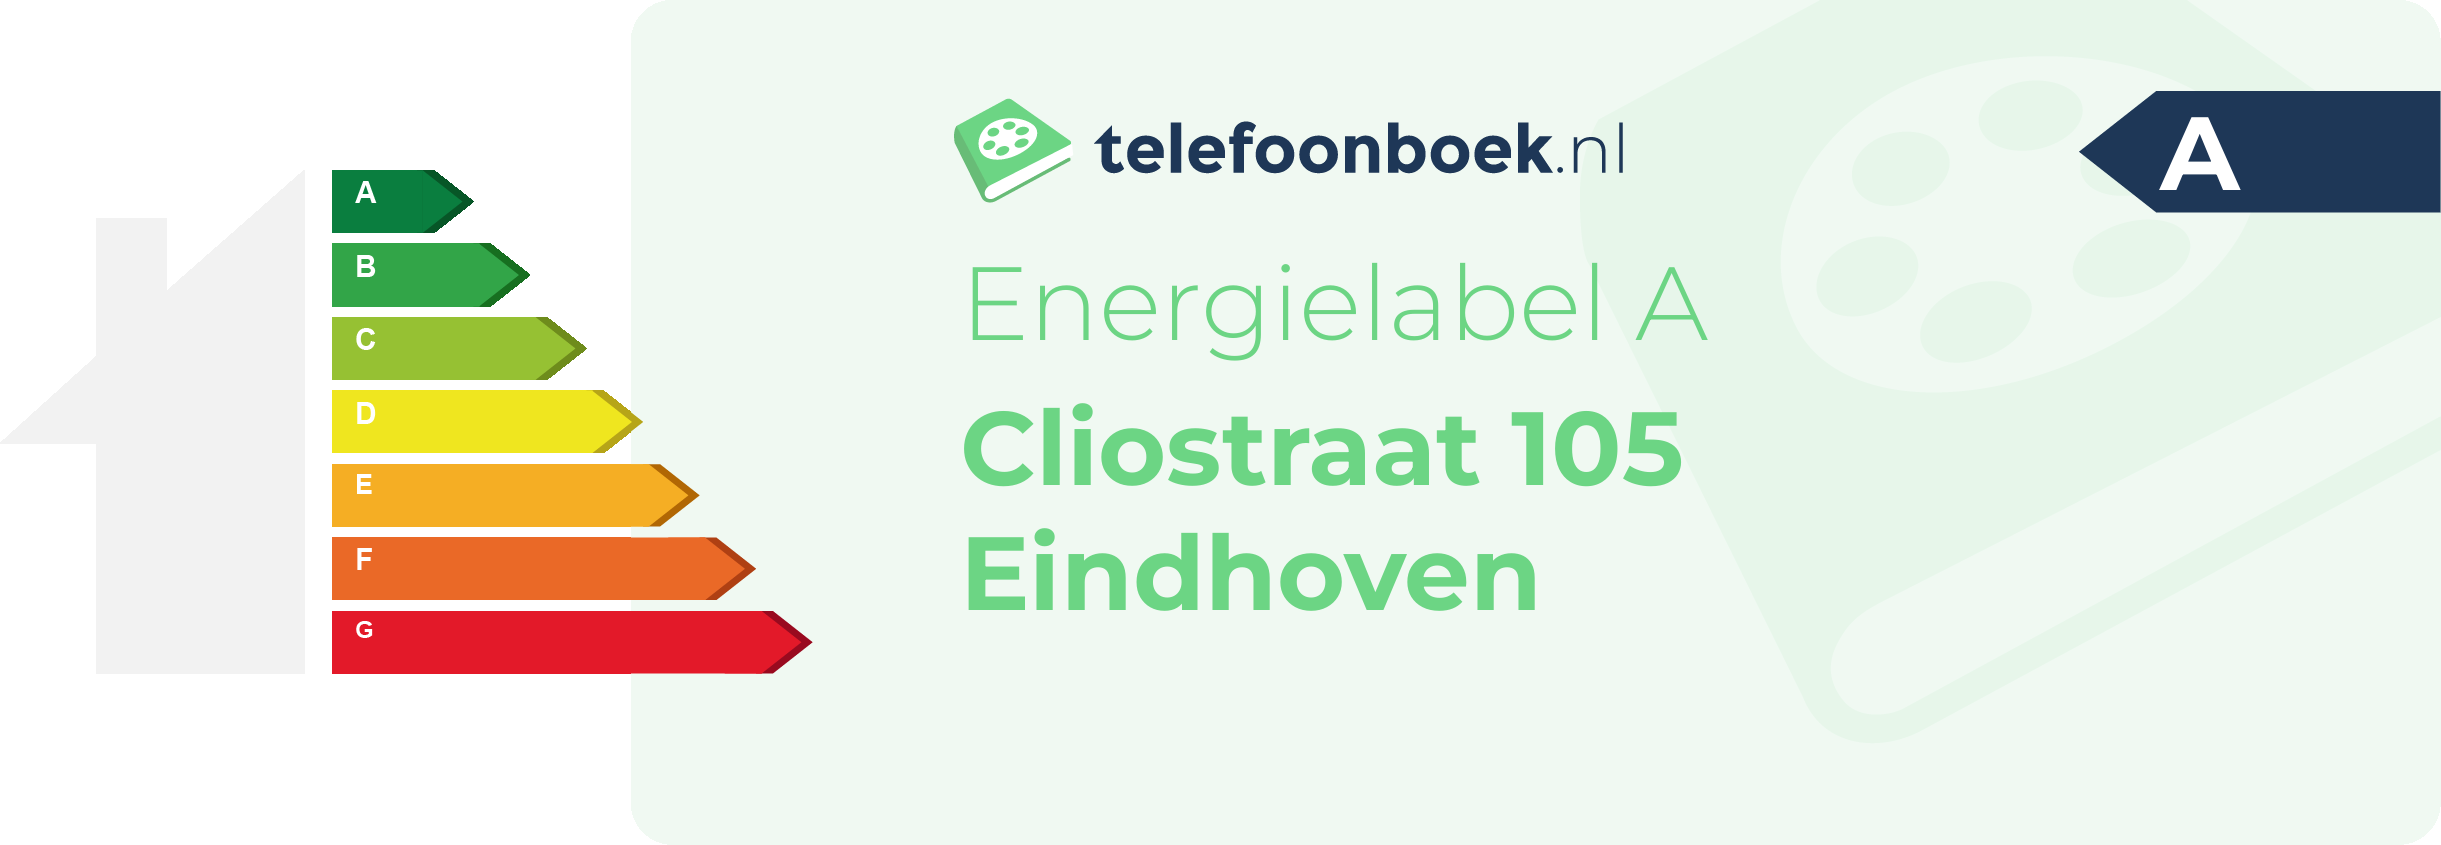 Energielabel Cliostraat 105 Eindhoven